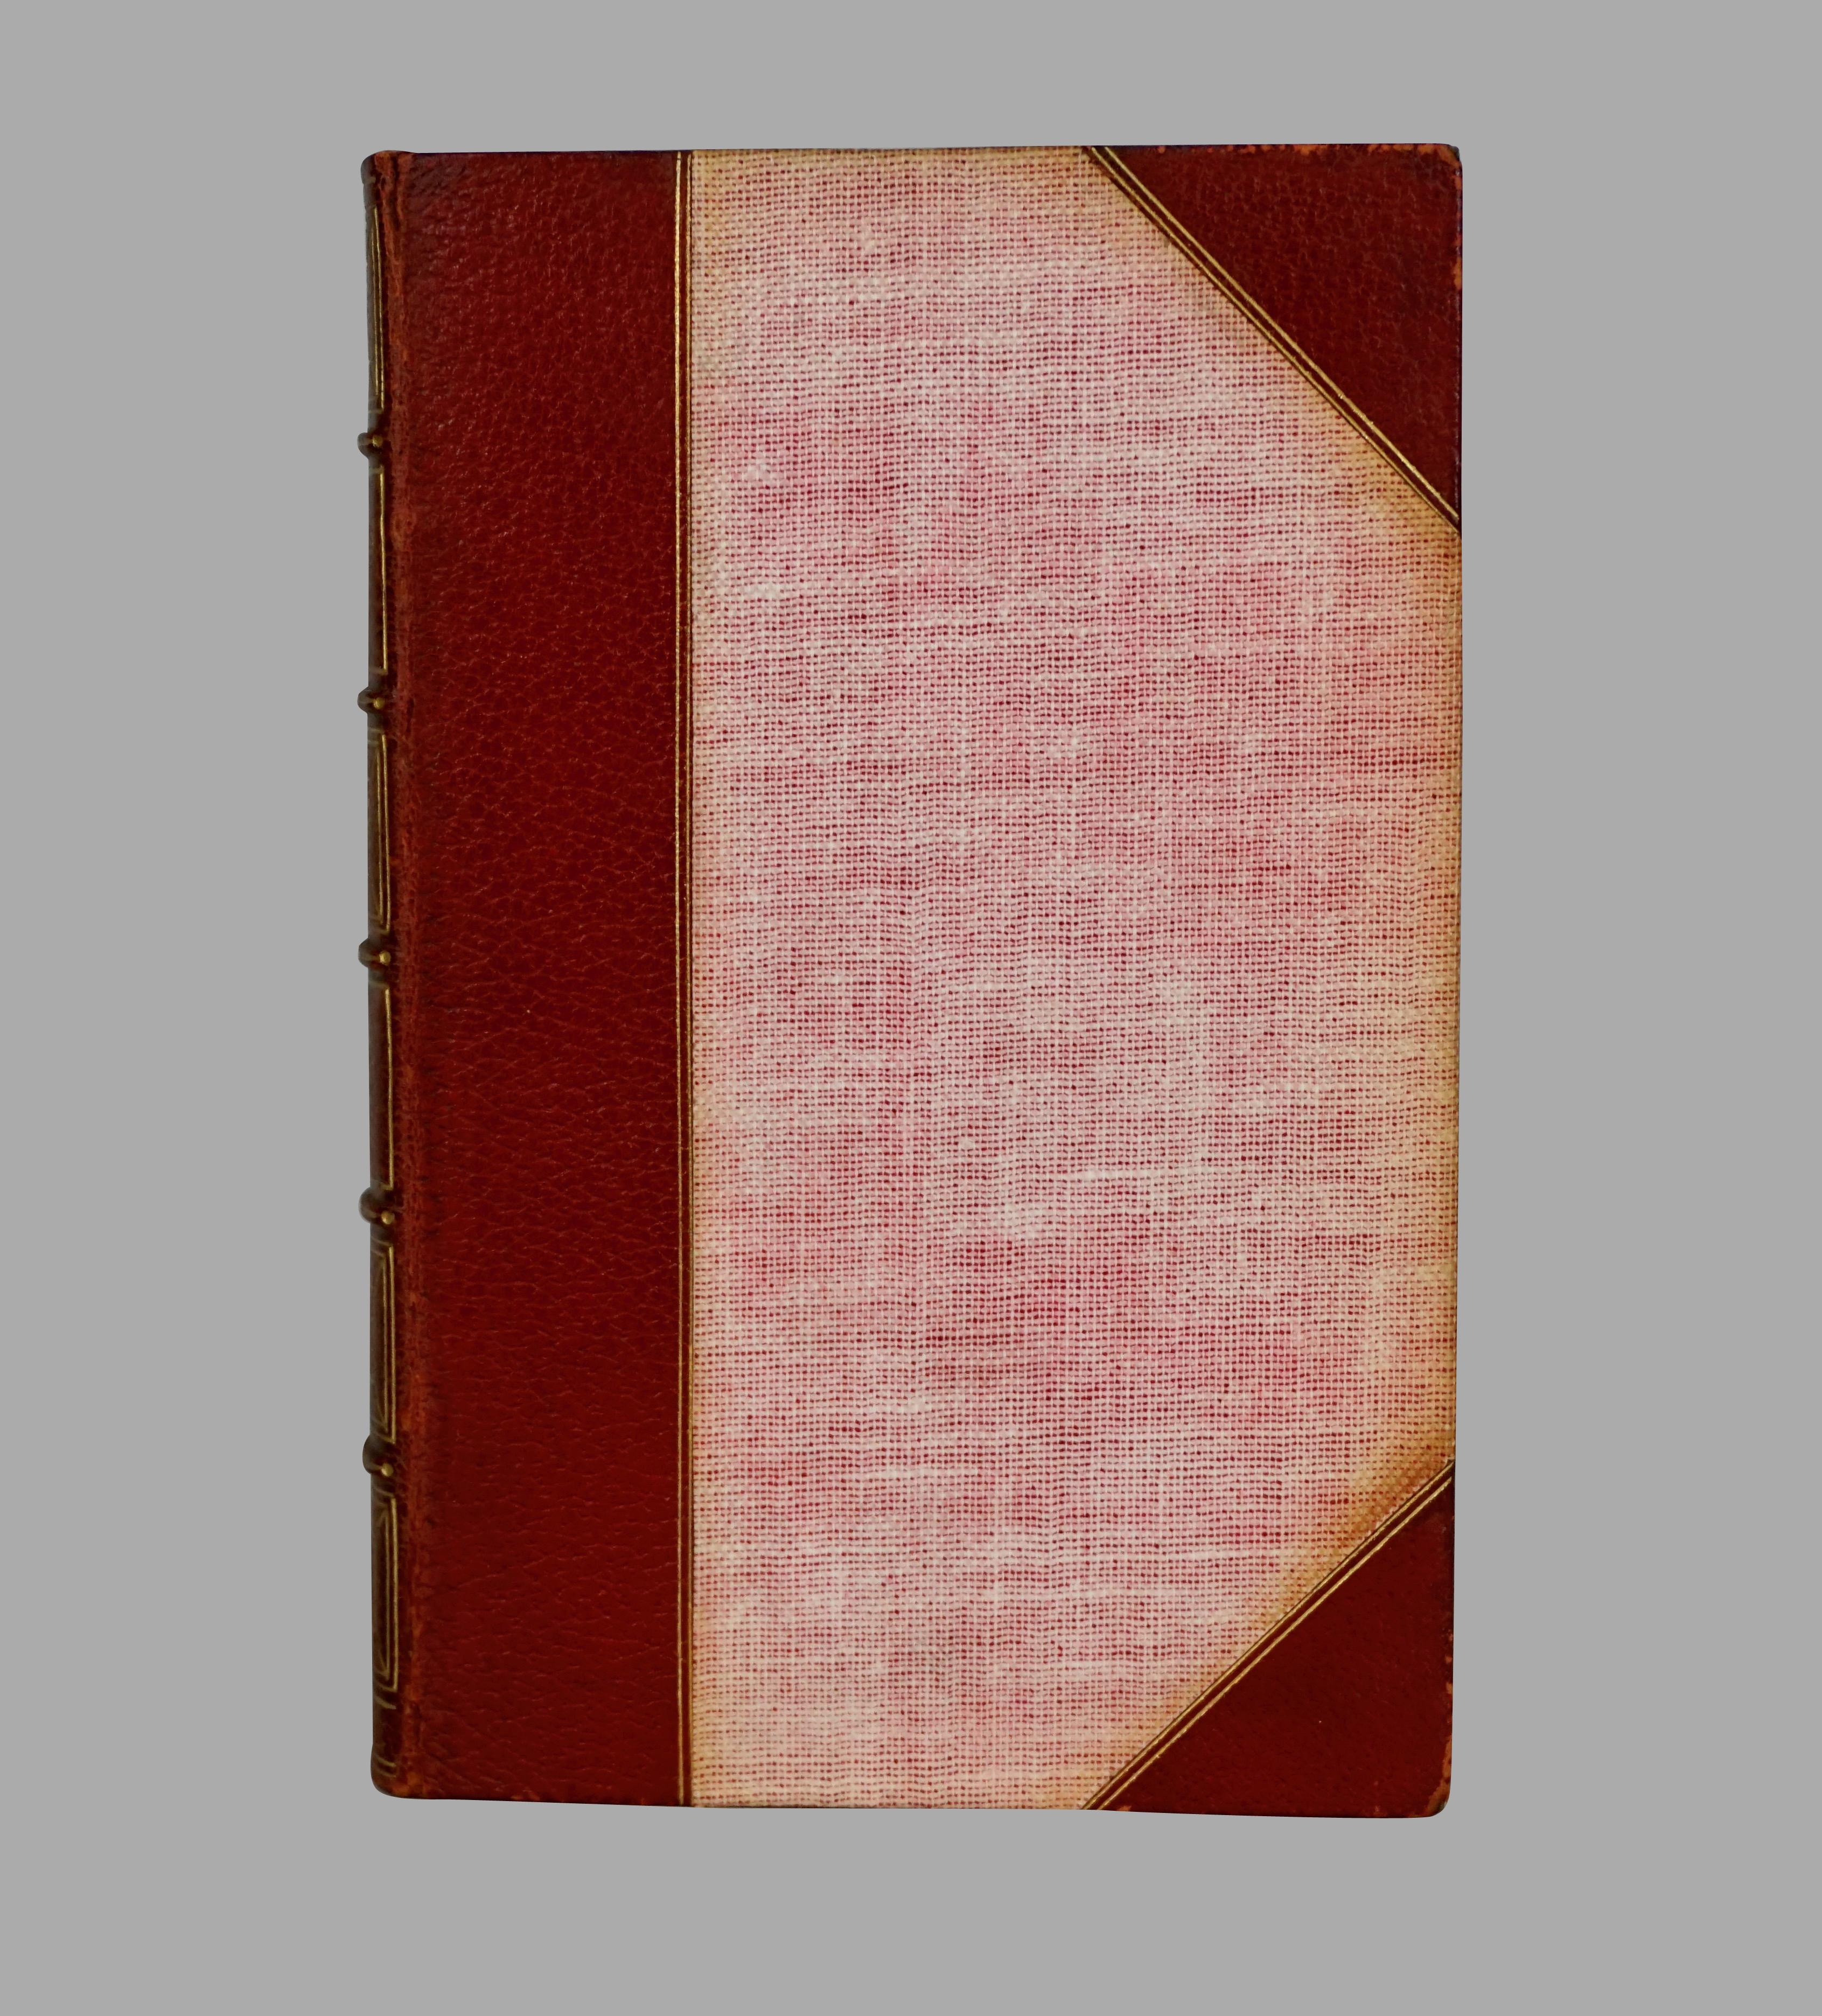 Eine attraktive, in Leder gebundene Sammlung der poetischen und dramatischen Werke von Robert Browning (1812-1889), die 1906 von Houghton Mifflin and Company, New York und Boston, veröffentlicht wurde. Obere Kanten vergoldet, jeder Band mit